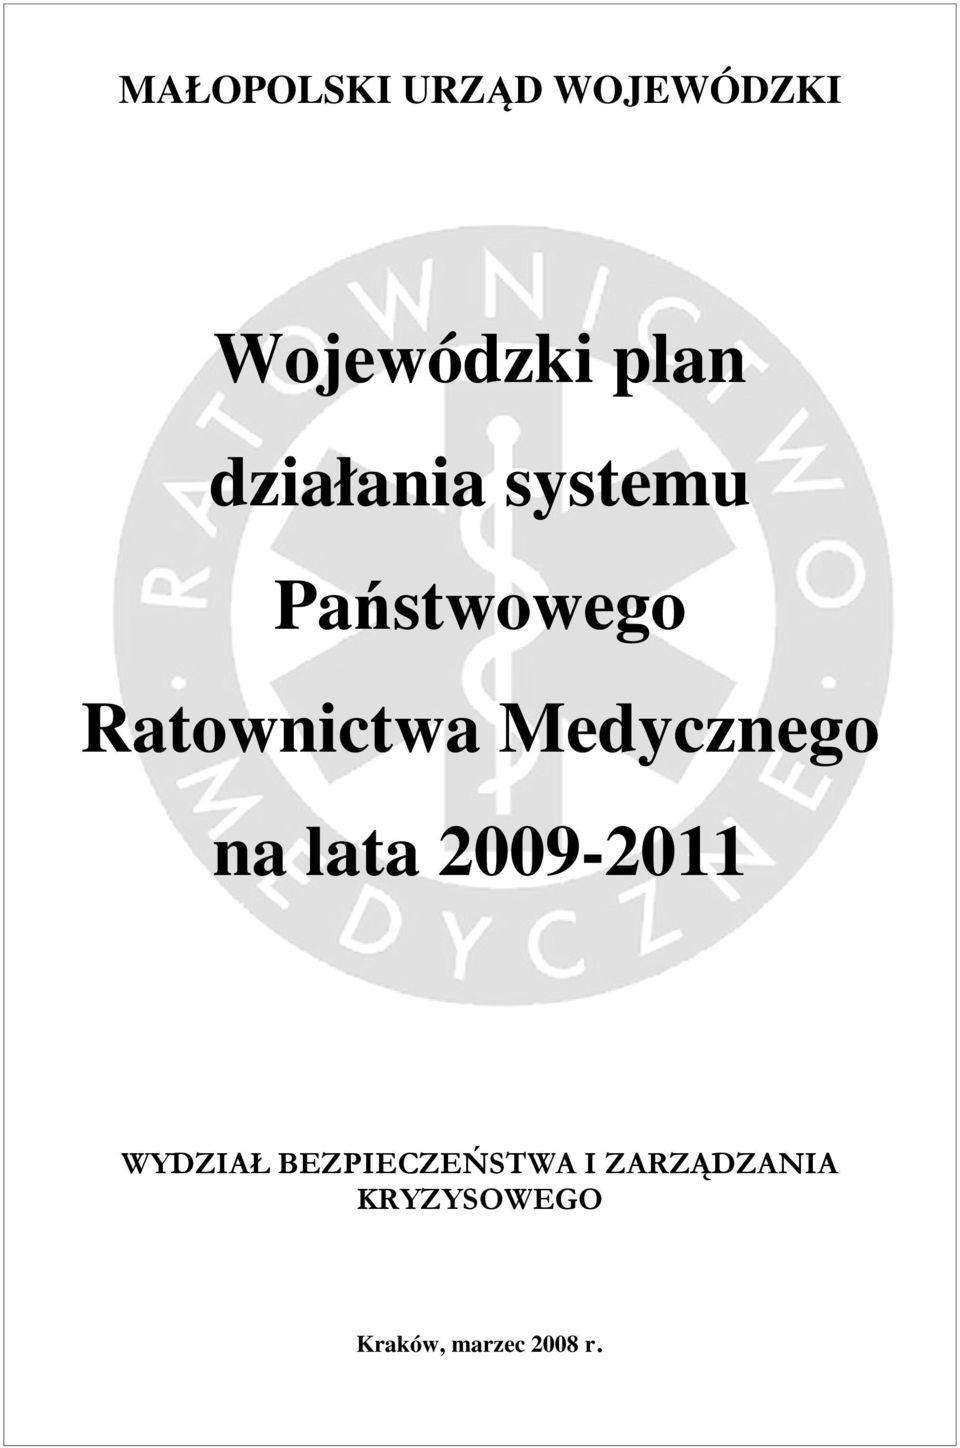 Medycznego na lata 2009-2011 WYDZIAŁ